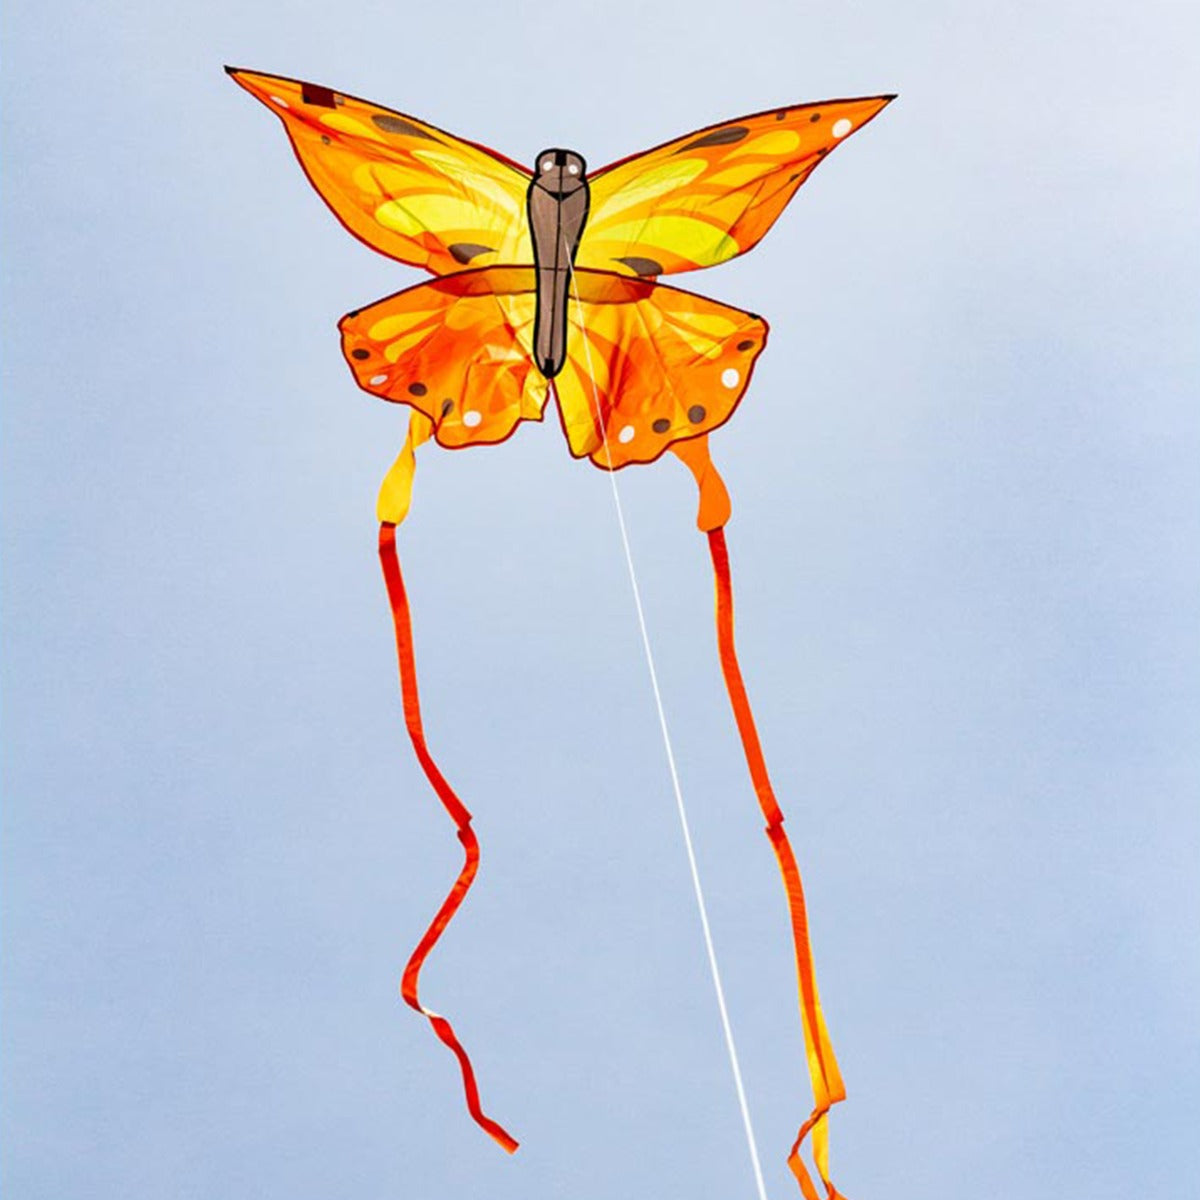 Kinderdrachen Einleiner Drachen HQ Butterfly Kite Sunrise Schmetterling Flugdrache